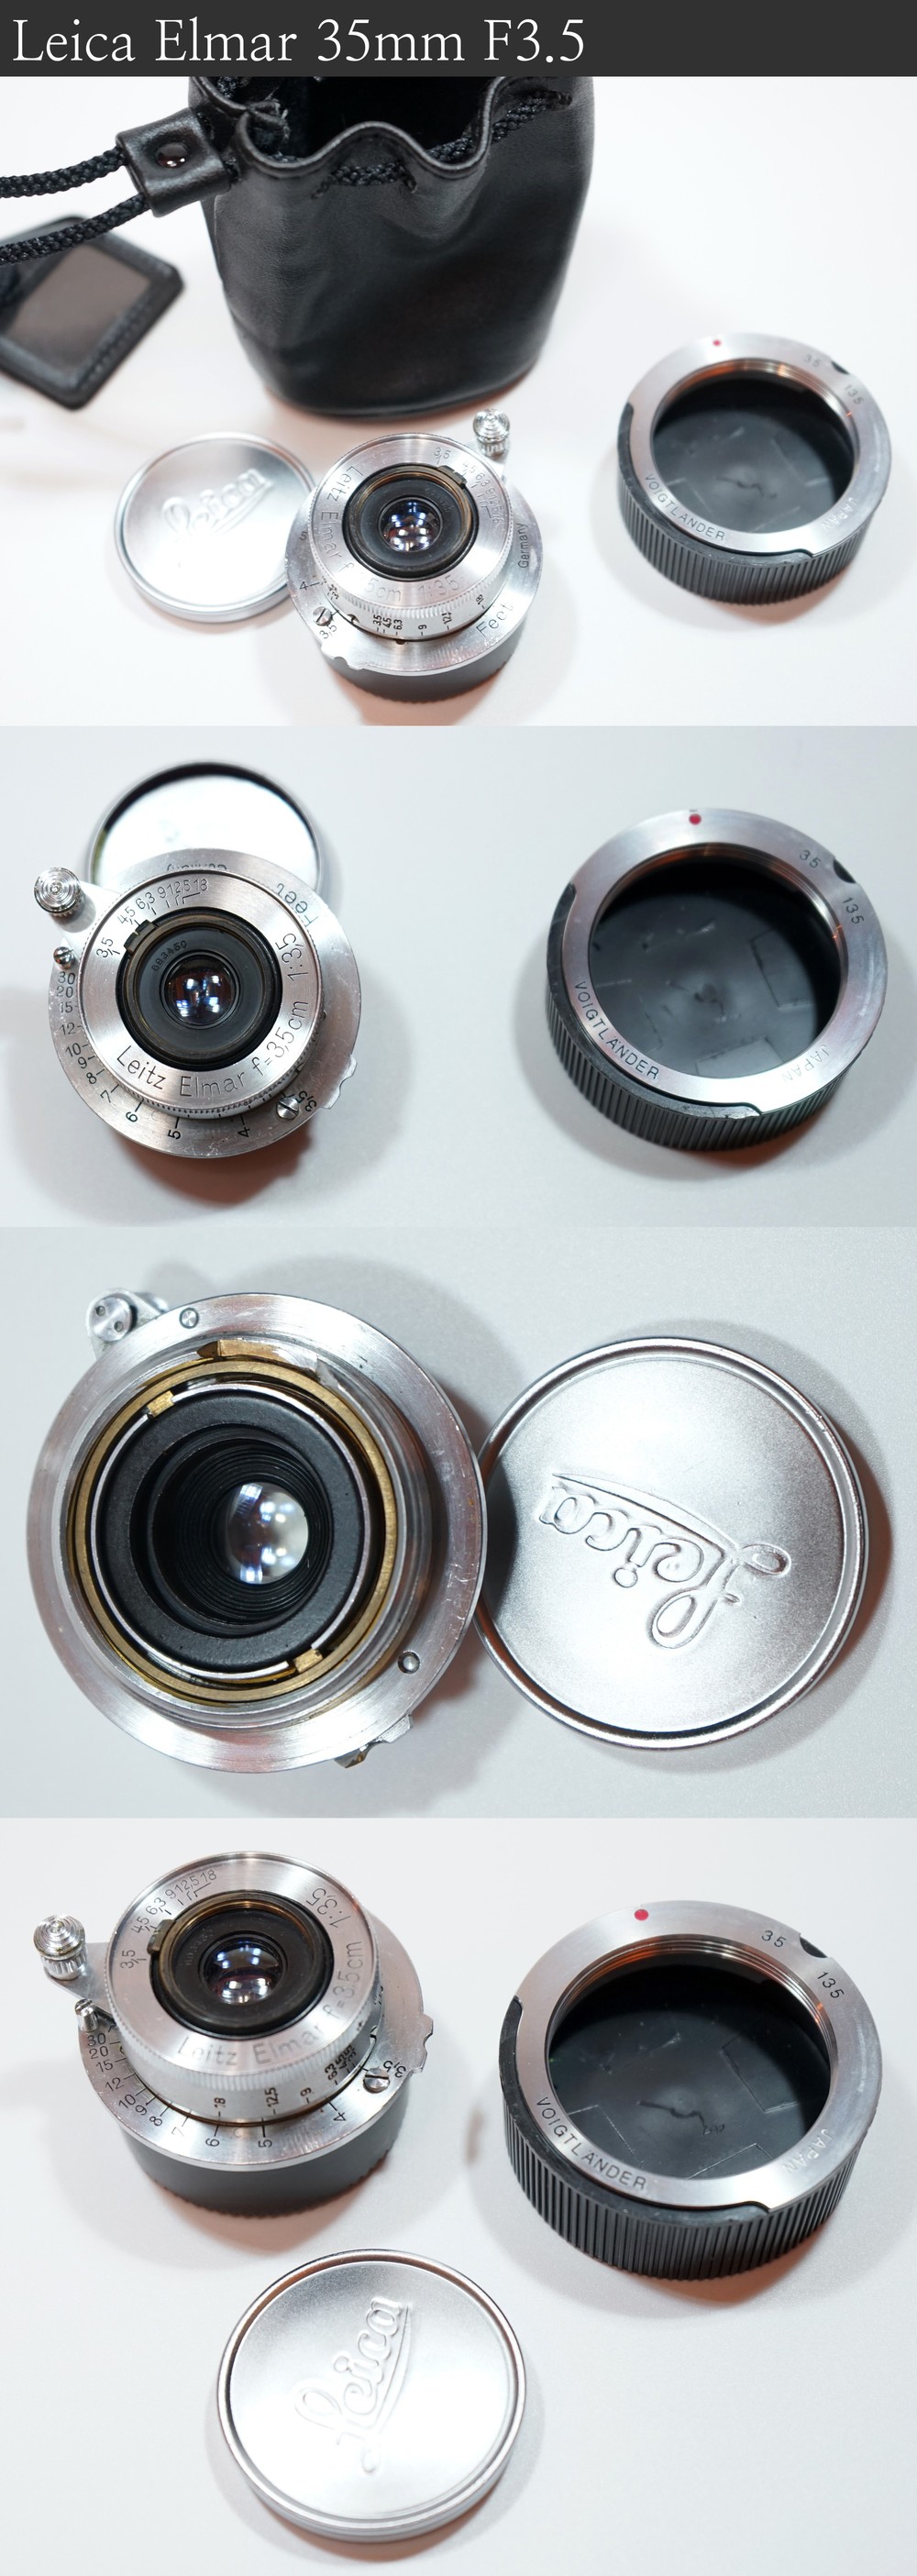 라이카(Leica) Elmar 35mm F3.5,베사(Bessa) R2,Voigtlander 12mm F5.6 Photo-Image